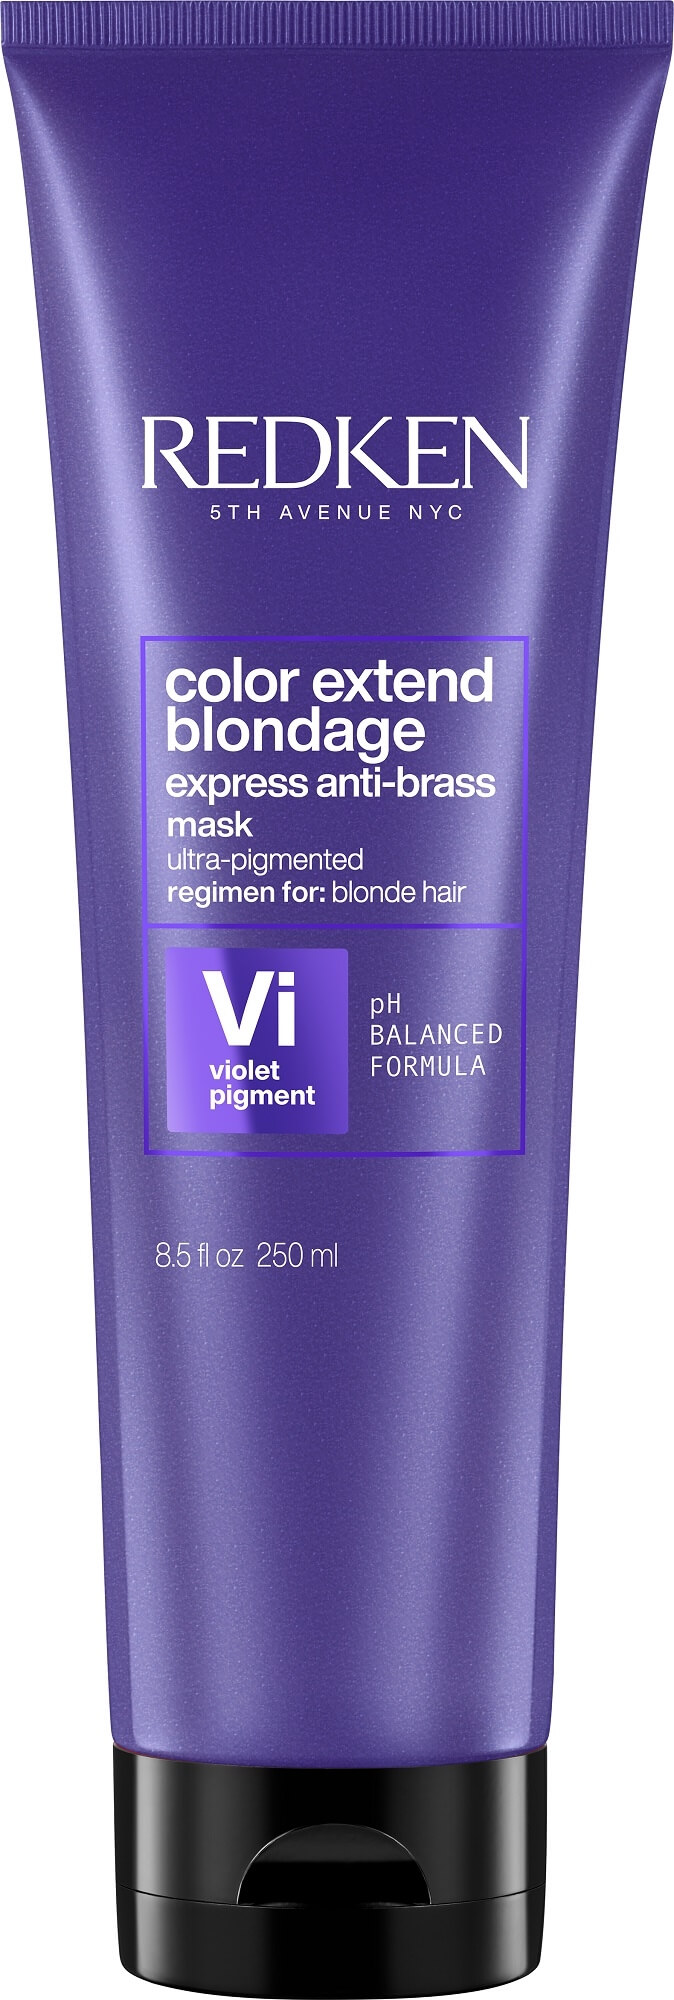 Maska neutralizující žluté tóny vlasů Color Extend Blondage (Express Anti-brass Purple Mask)